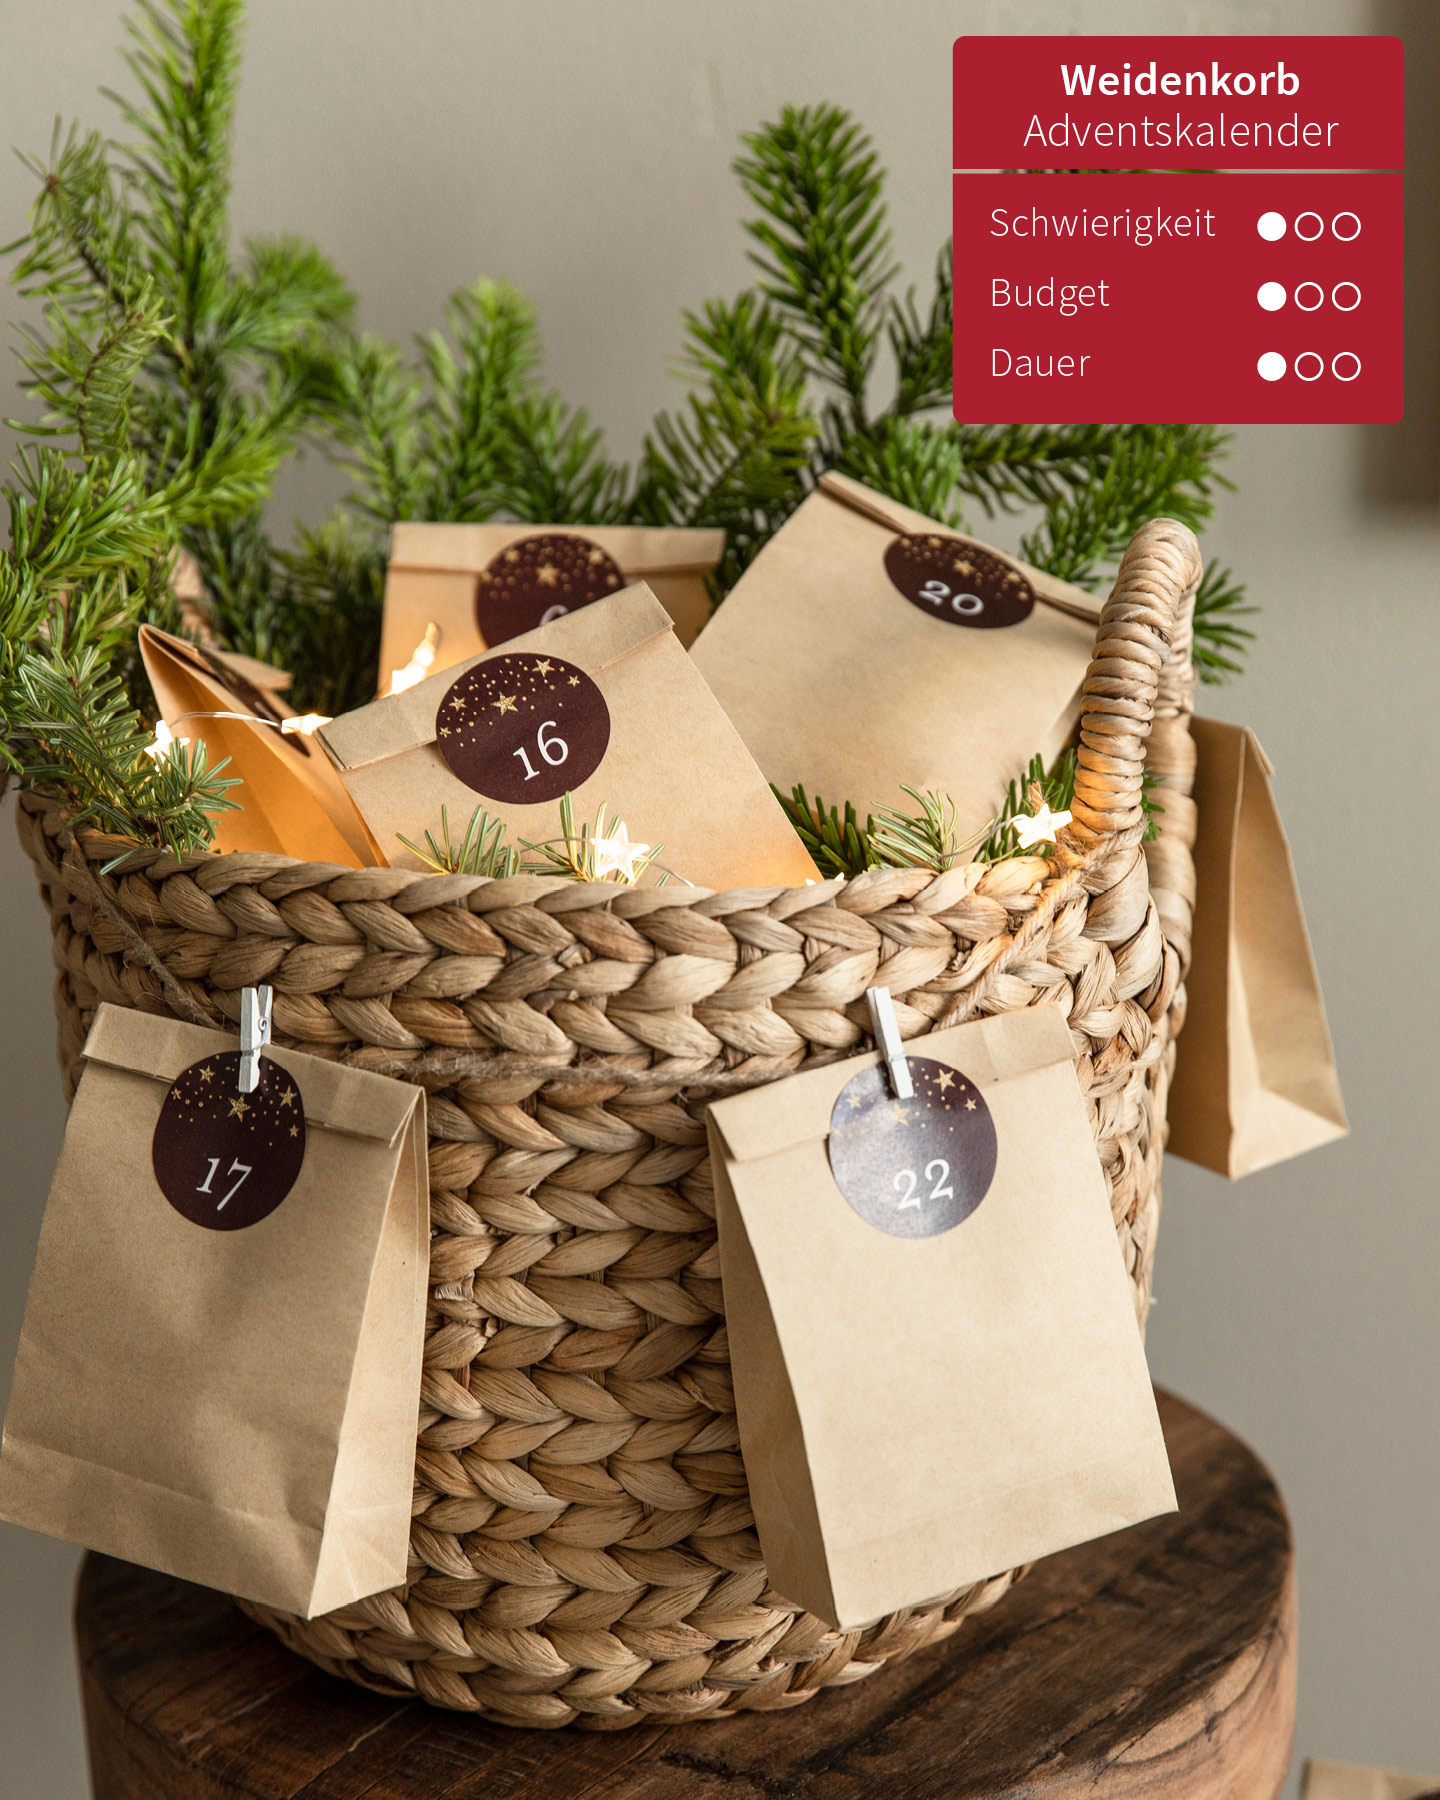 Weidenkorb gefüllt mit kleinen Tüten und Tannenzweigen ist ein selbst gemachter Adventskalender.